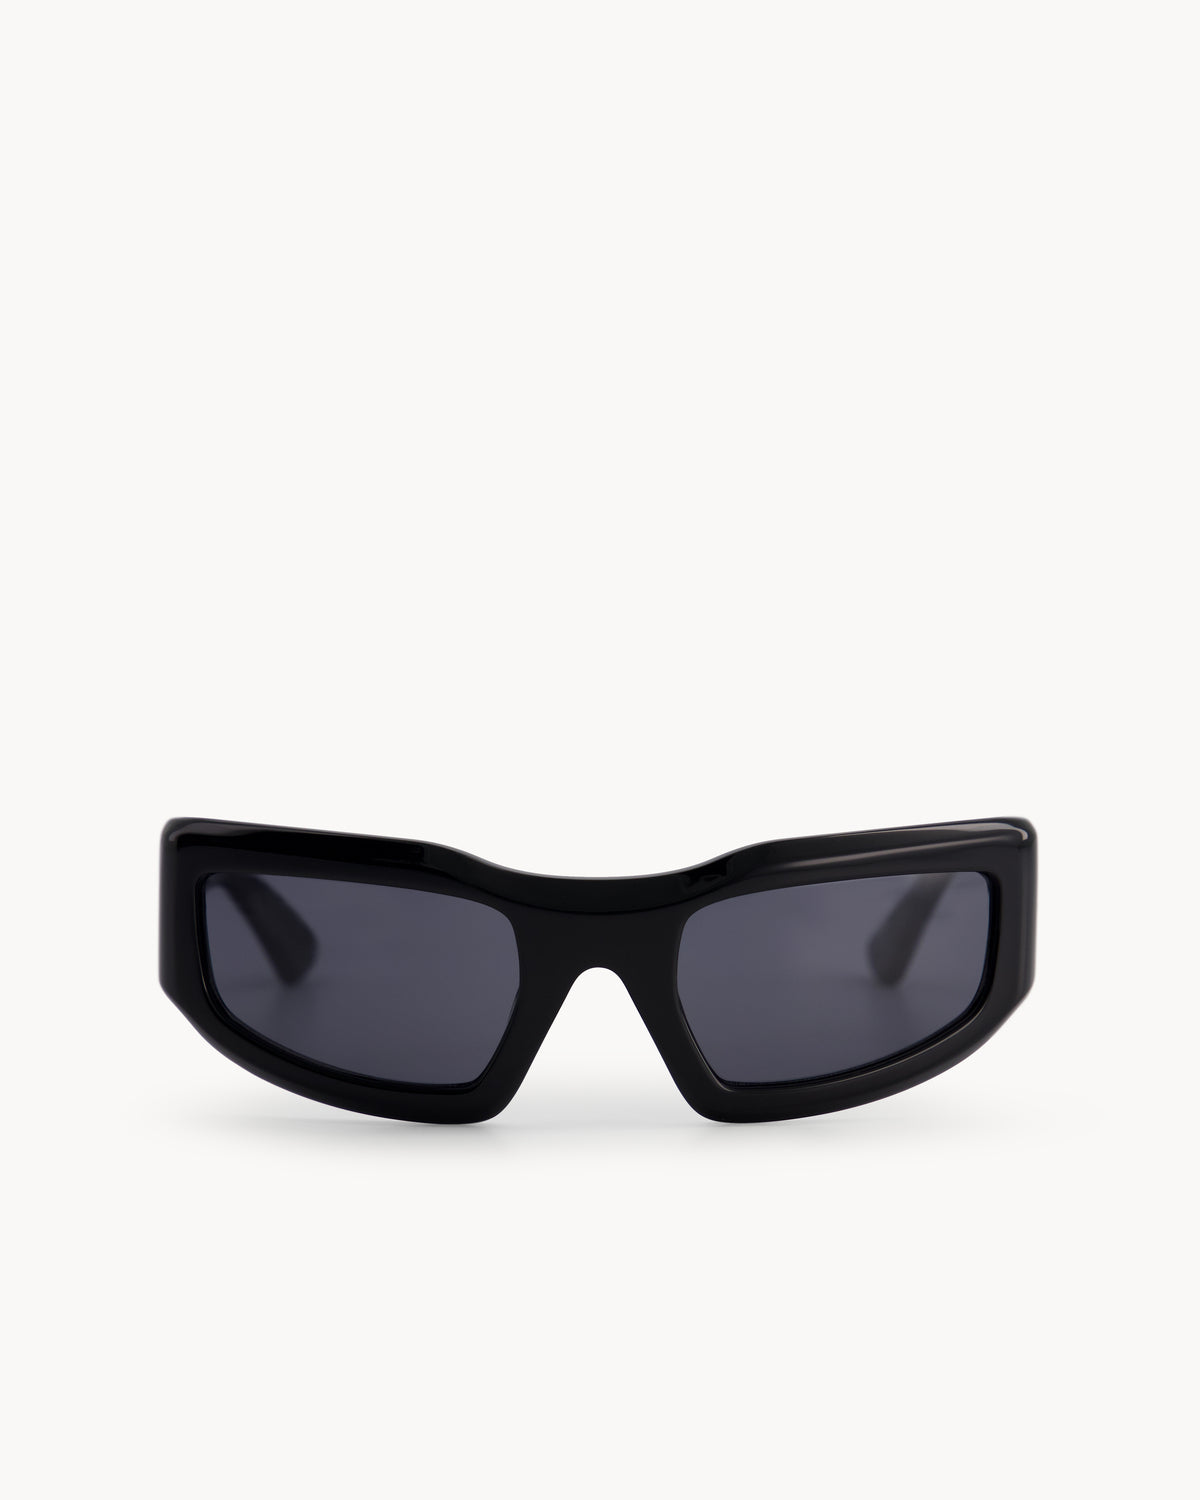 Leila | Black Acetate | Black Lens | Port Tanger Sunglasses – Port Tanger